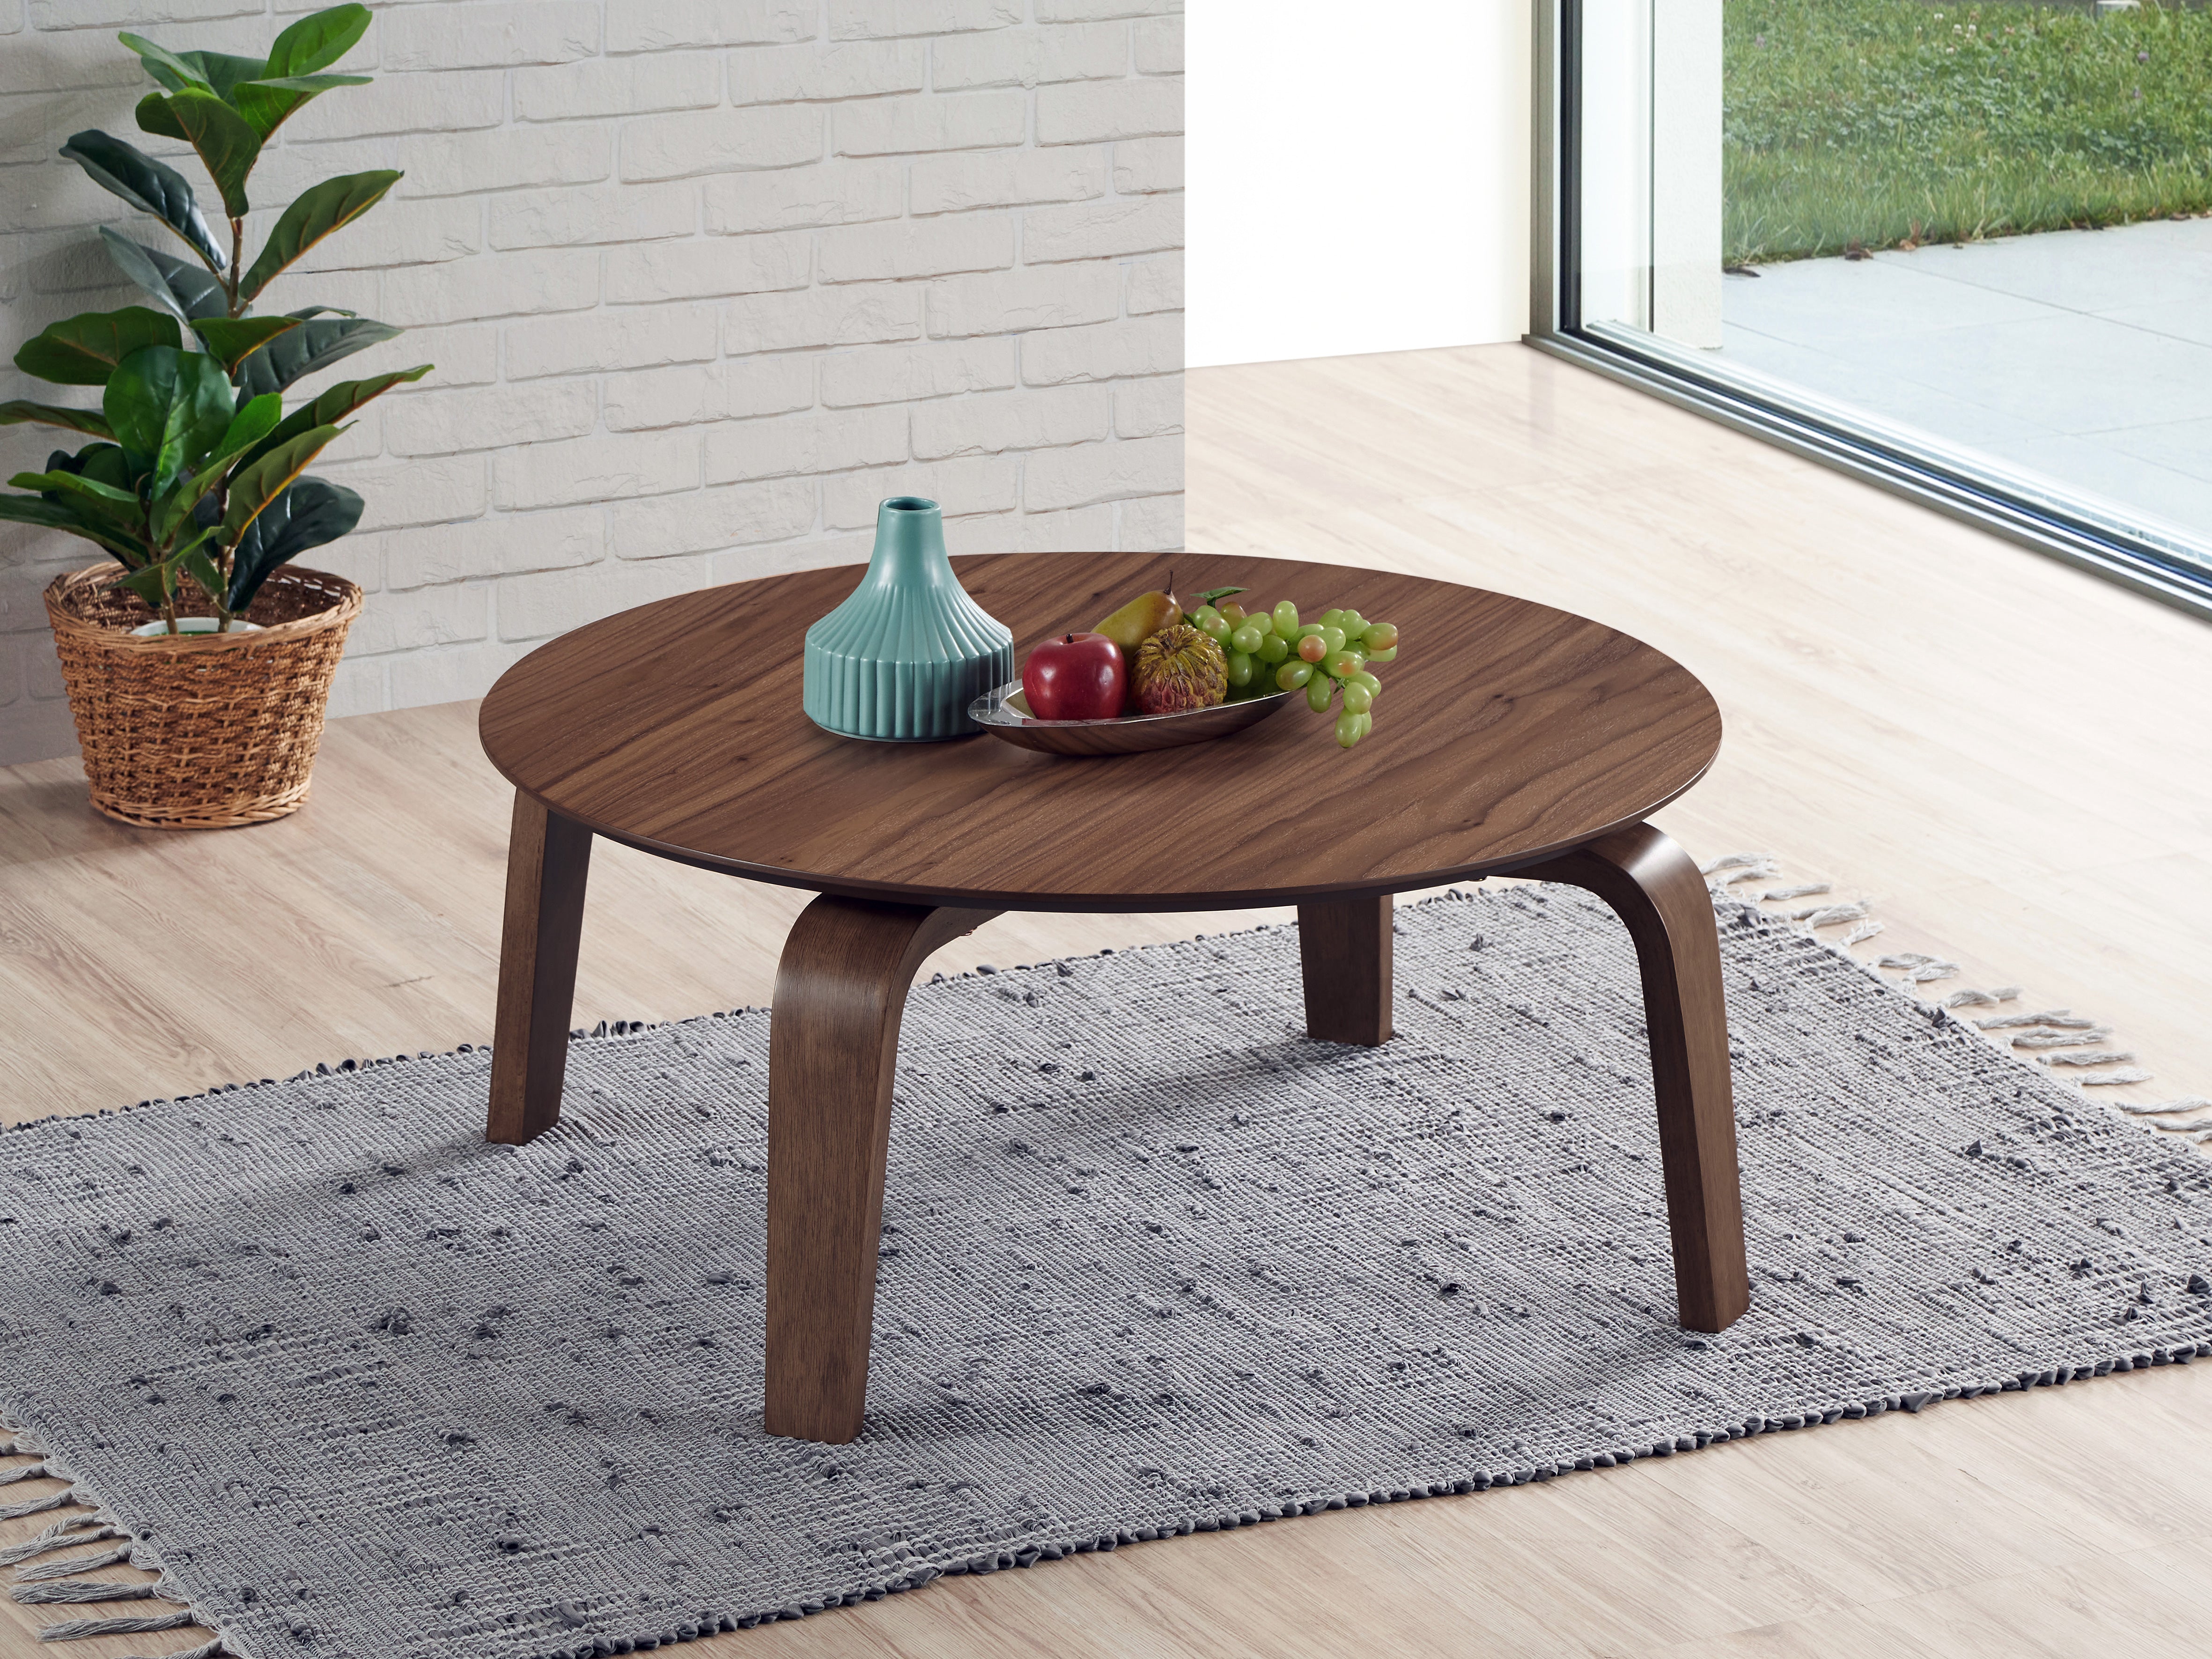 Mod Round Shape Mid-Century Wood Coffee Table - Walnut